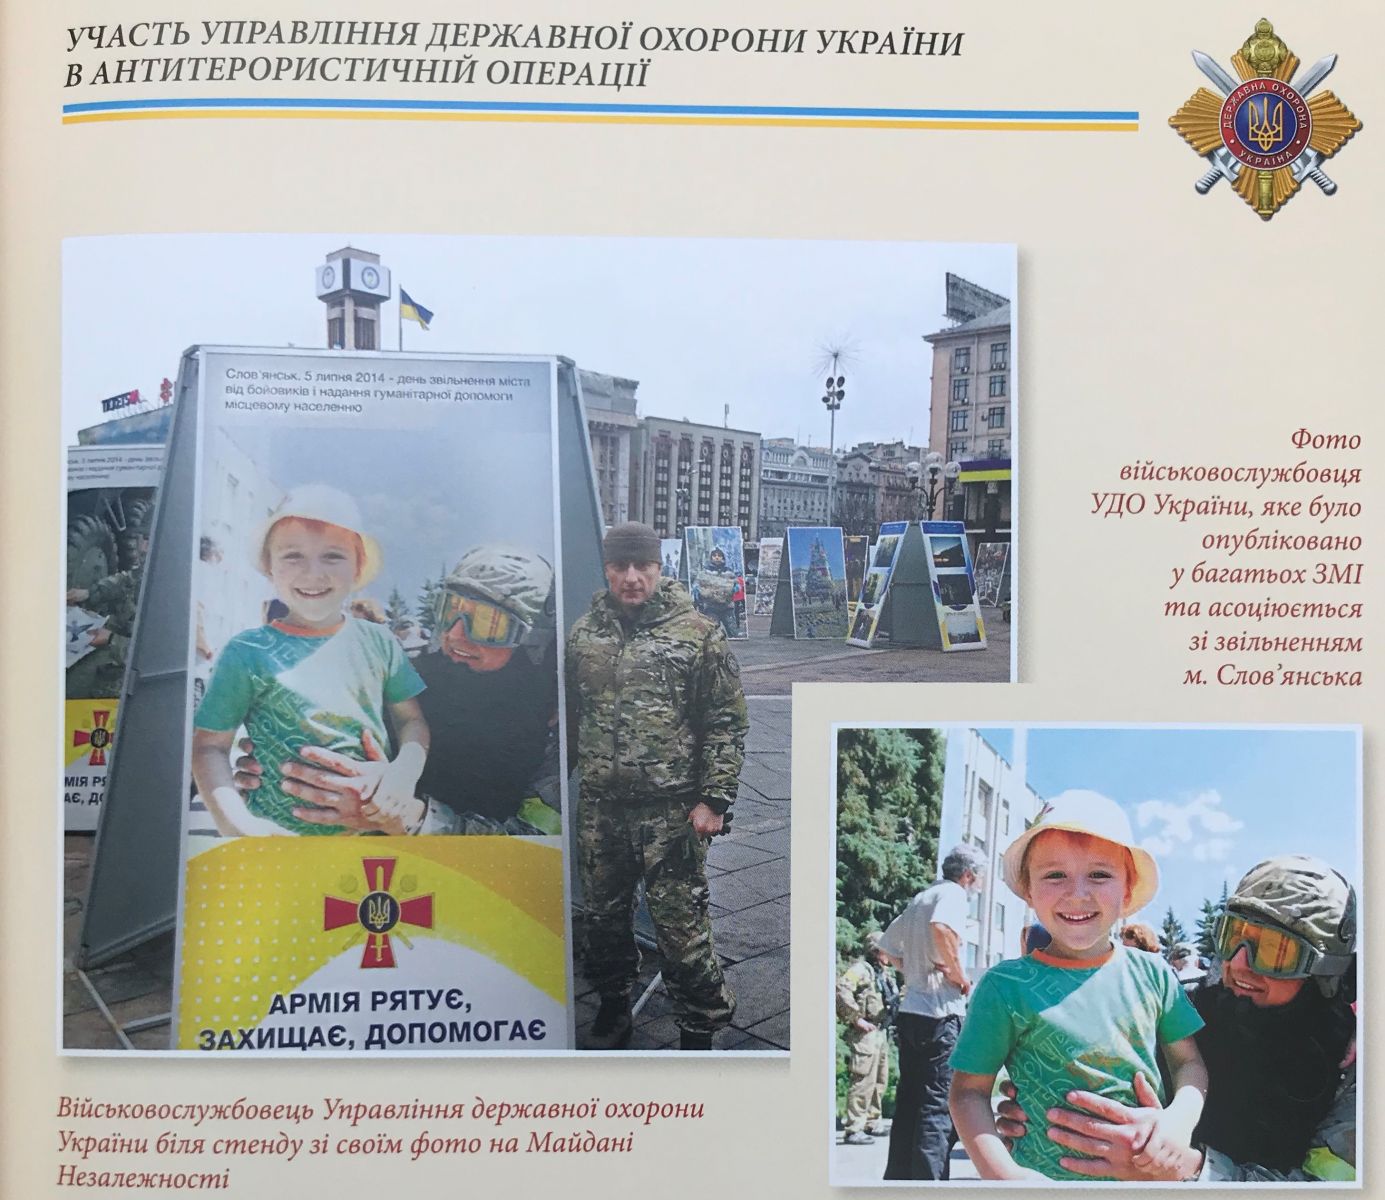 Киев, Майдан Независимости. Фото из книги, посвященной 25-летию создания УГО